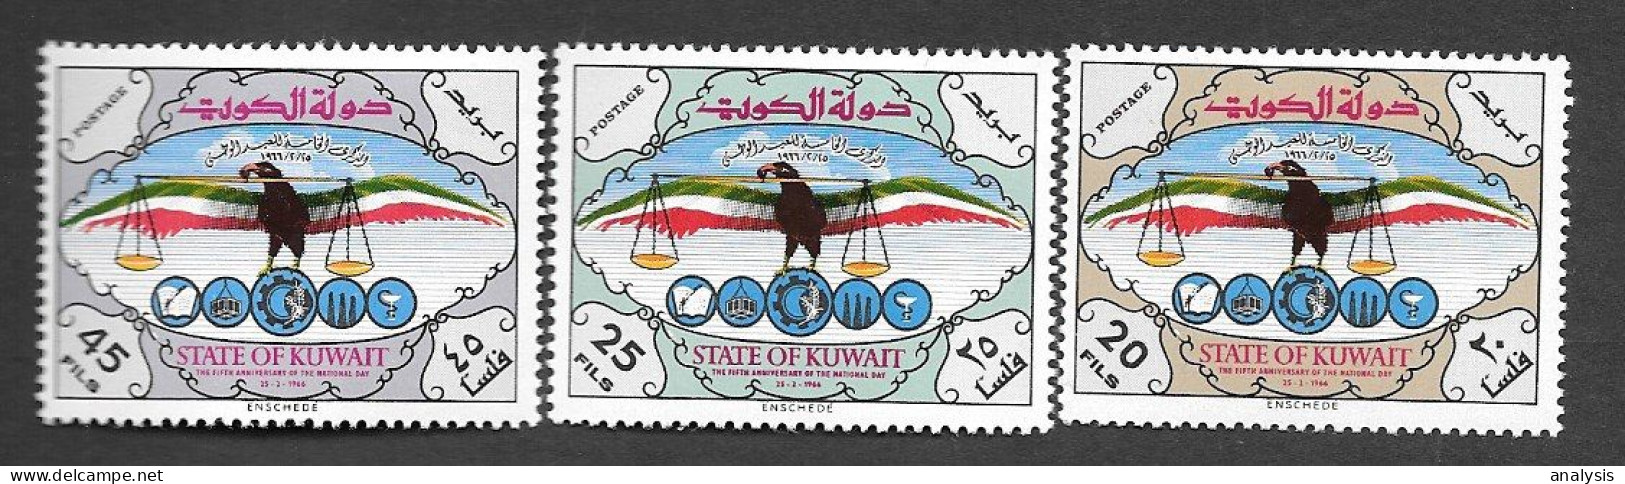 Kuwait National Day 3 Stamps 1966 MNH - Kuwait